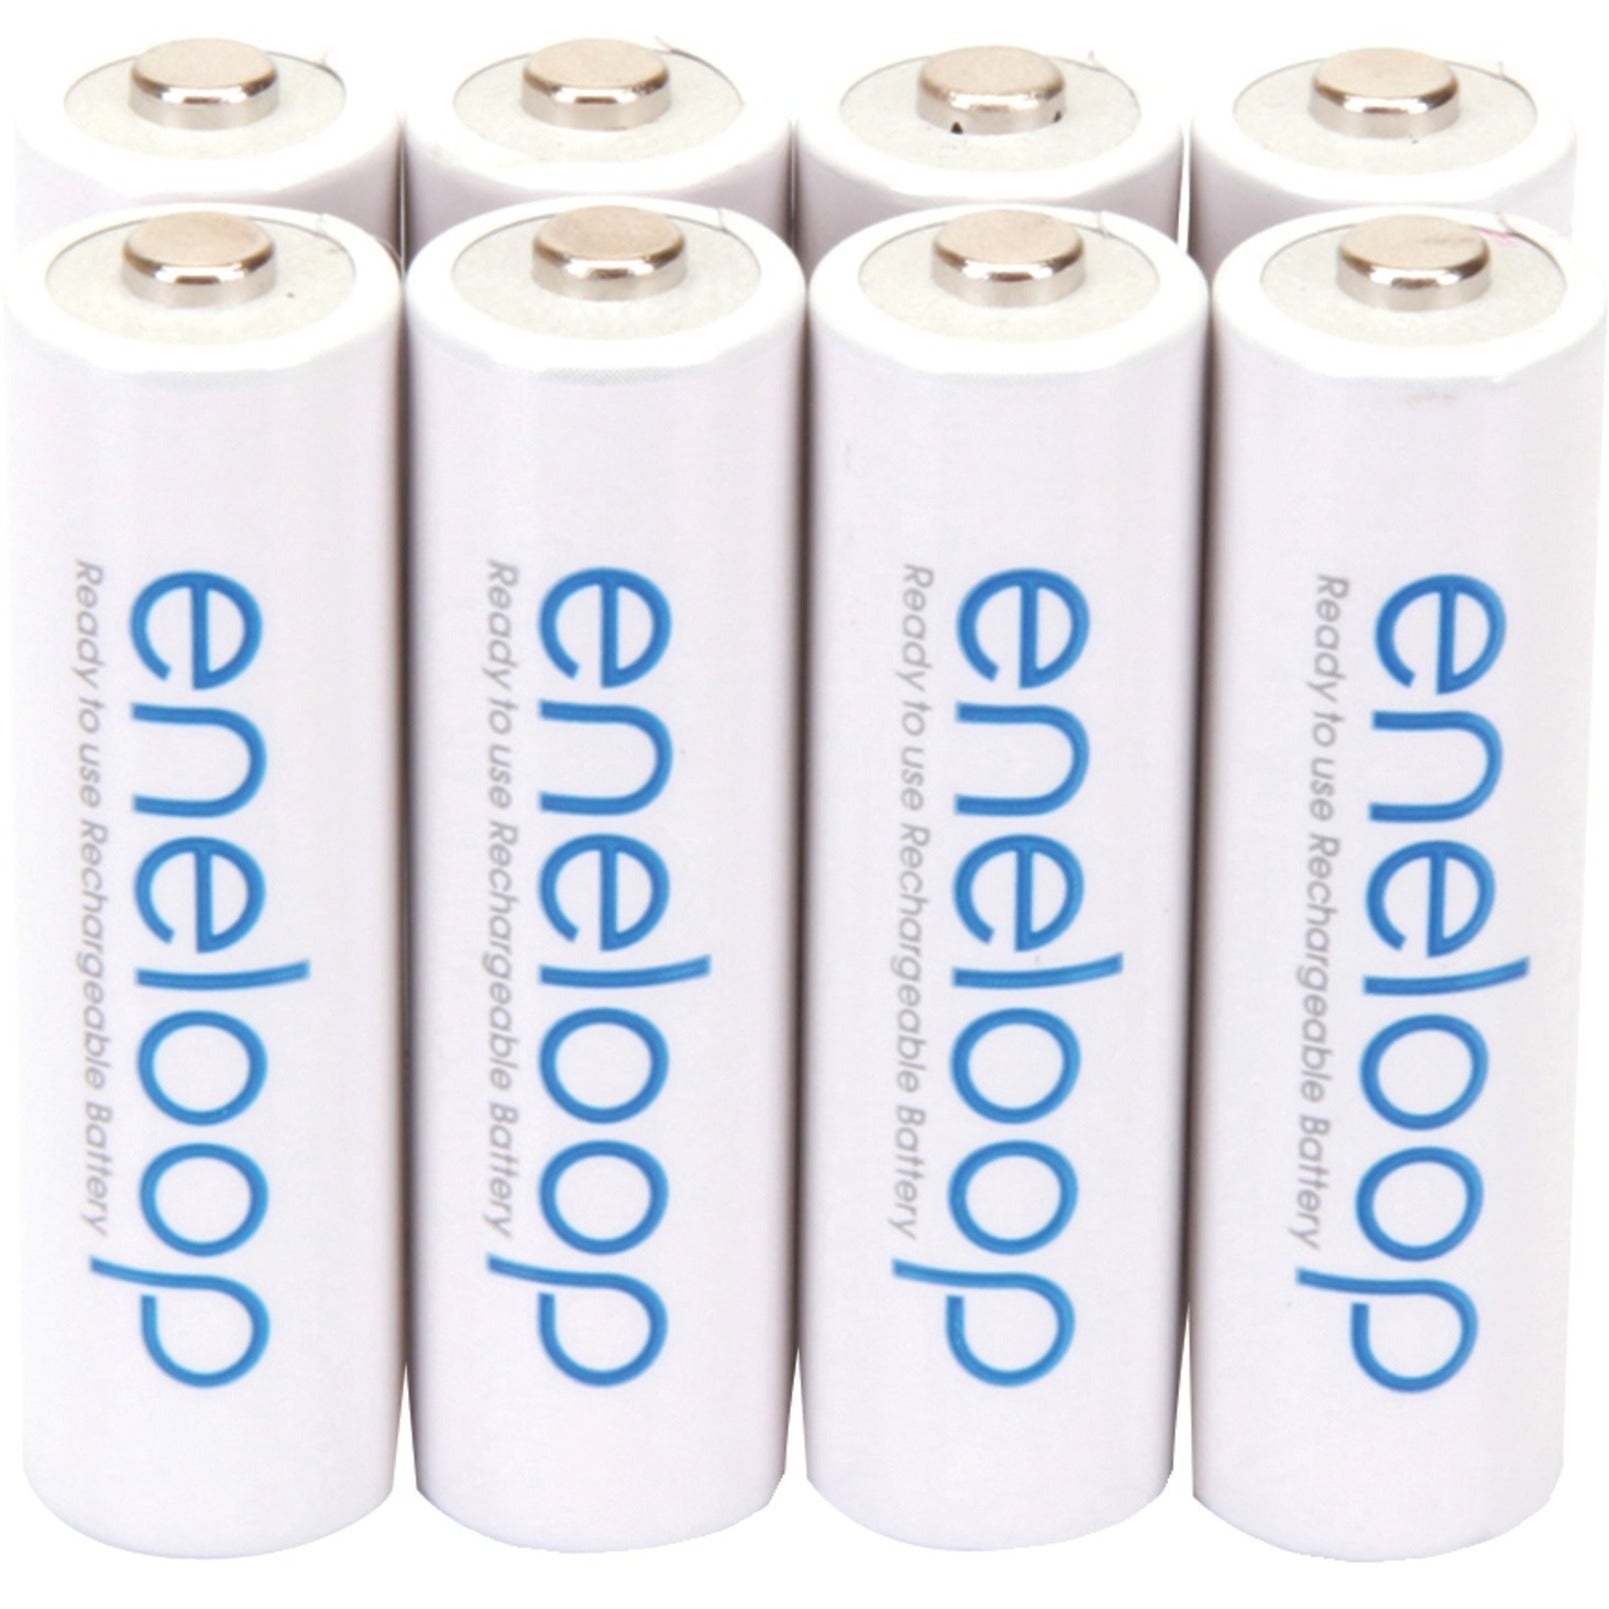 Eneloop AA Review: Super long-lasting batteries